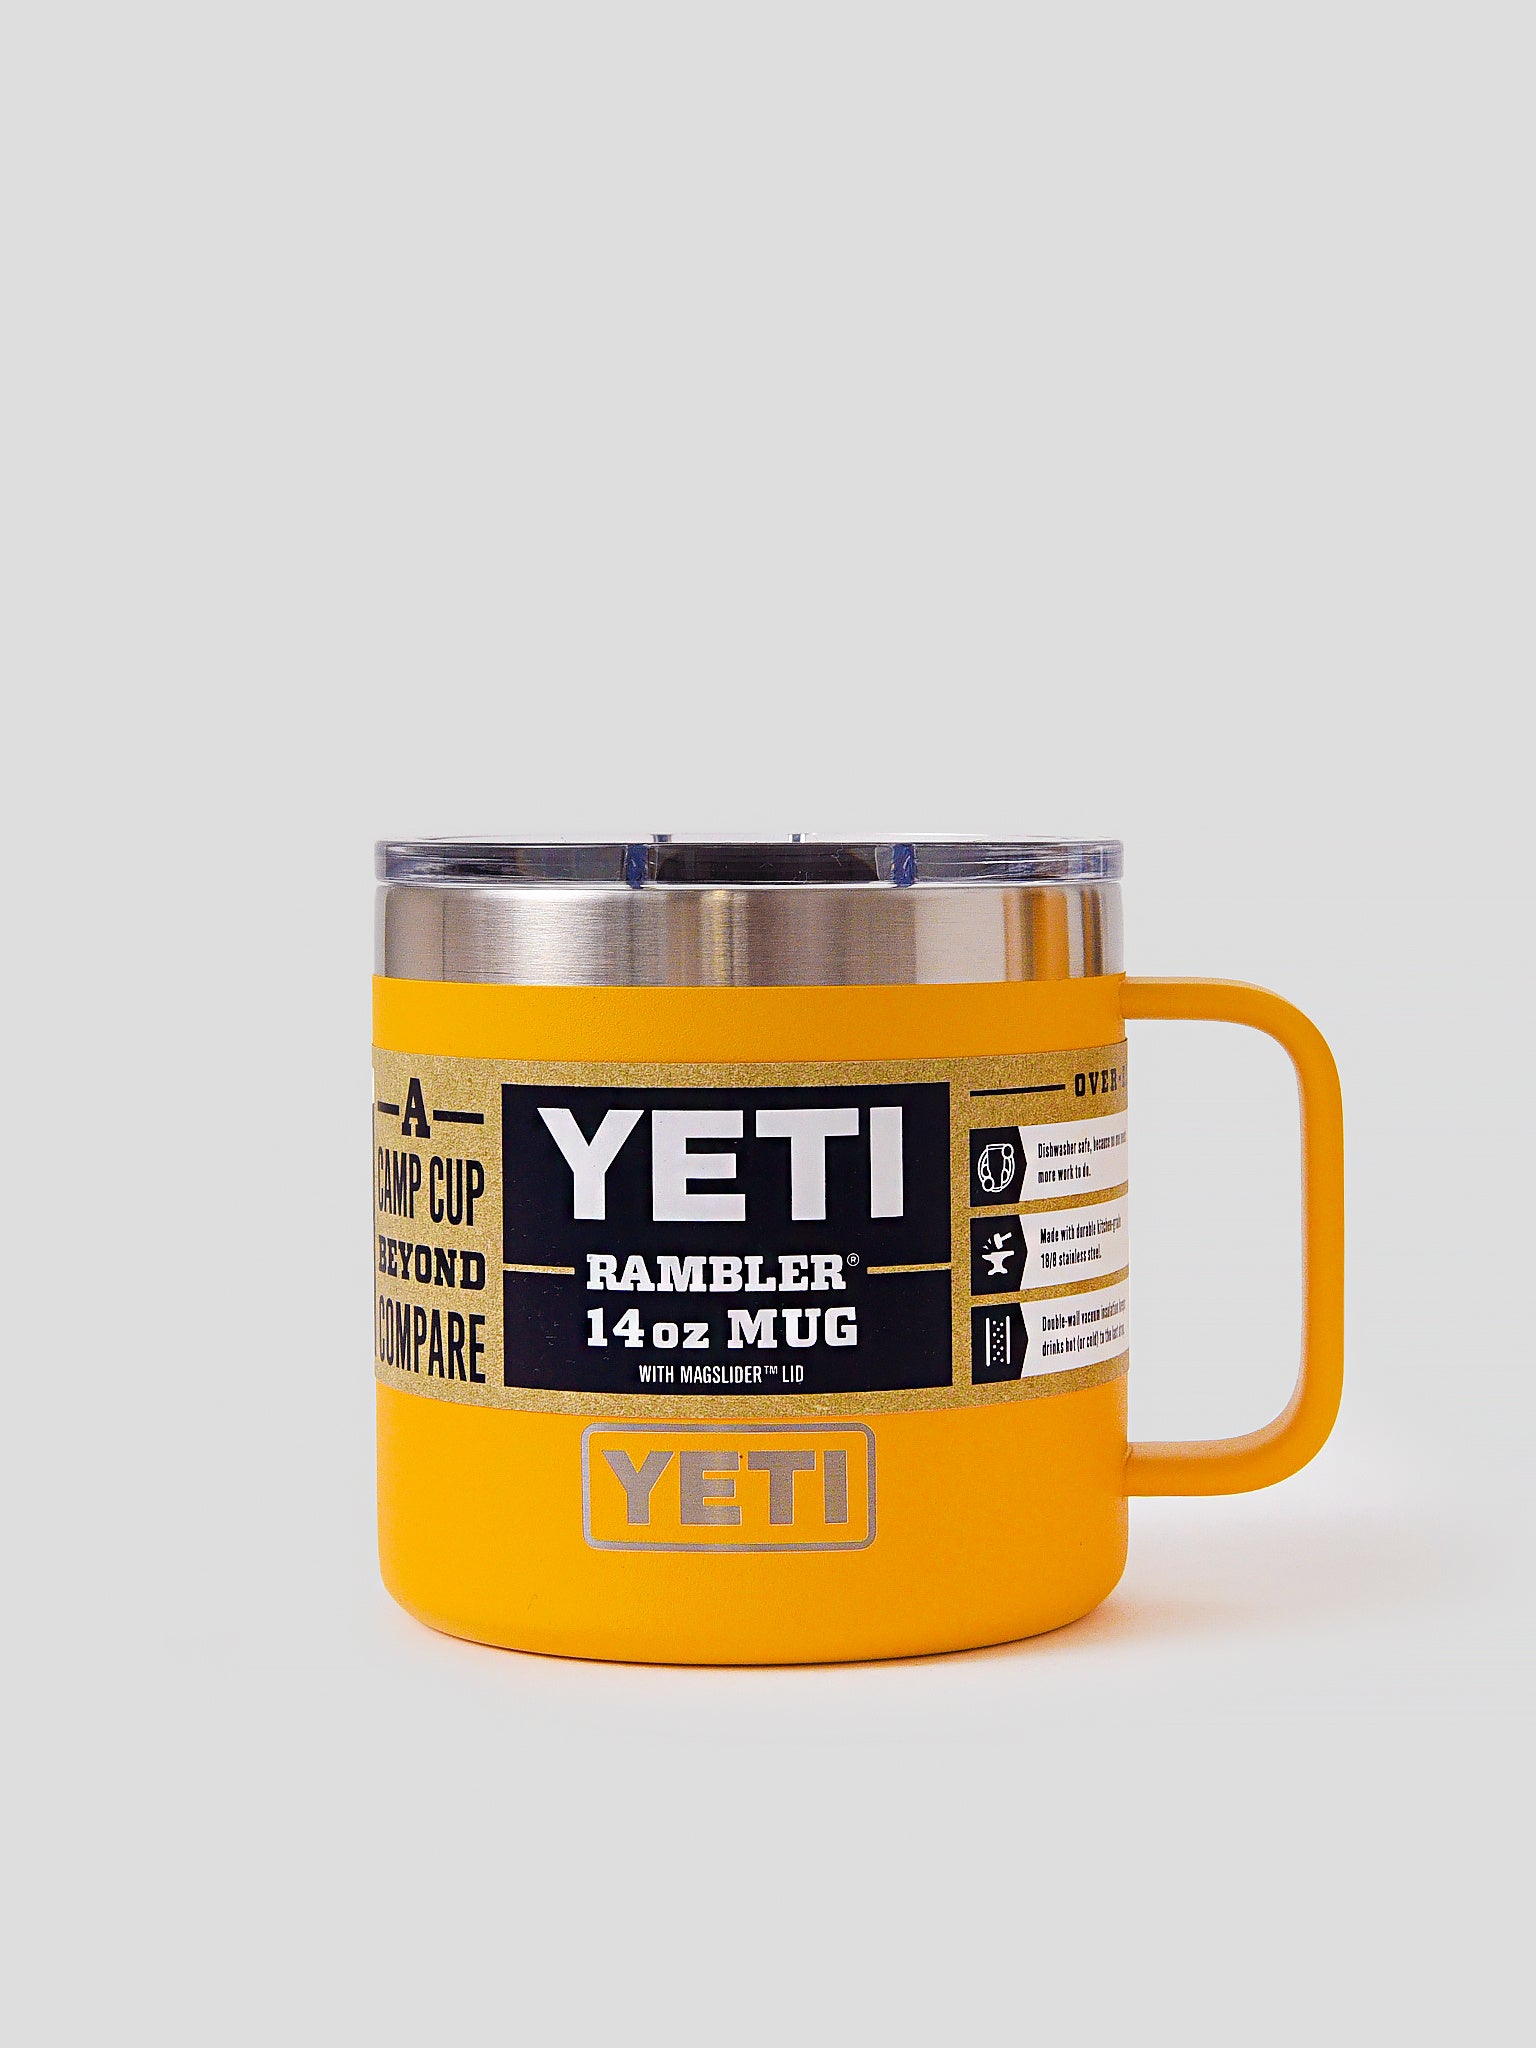  YETI Rambler 14 oz Mug, Vacuum Insulated, Stainless